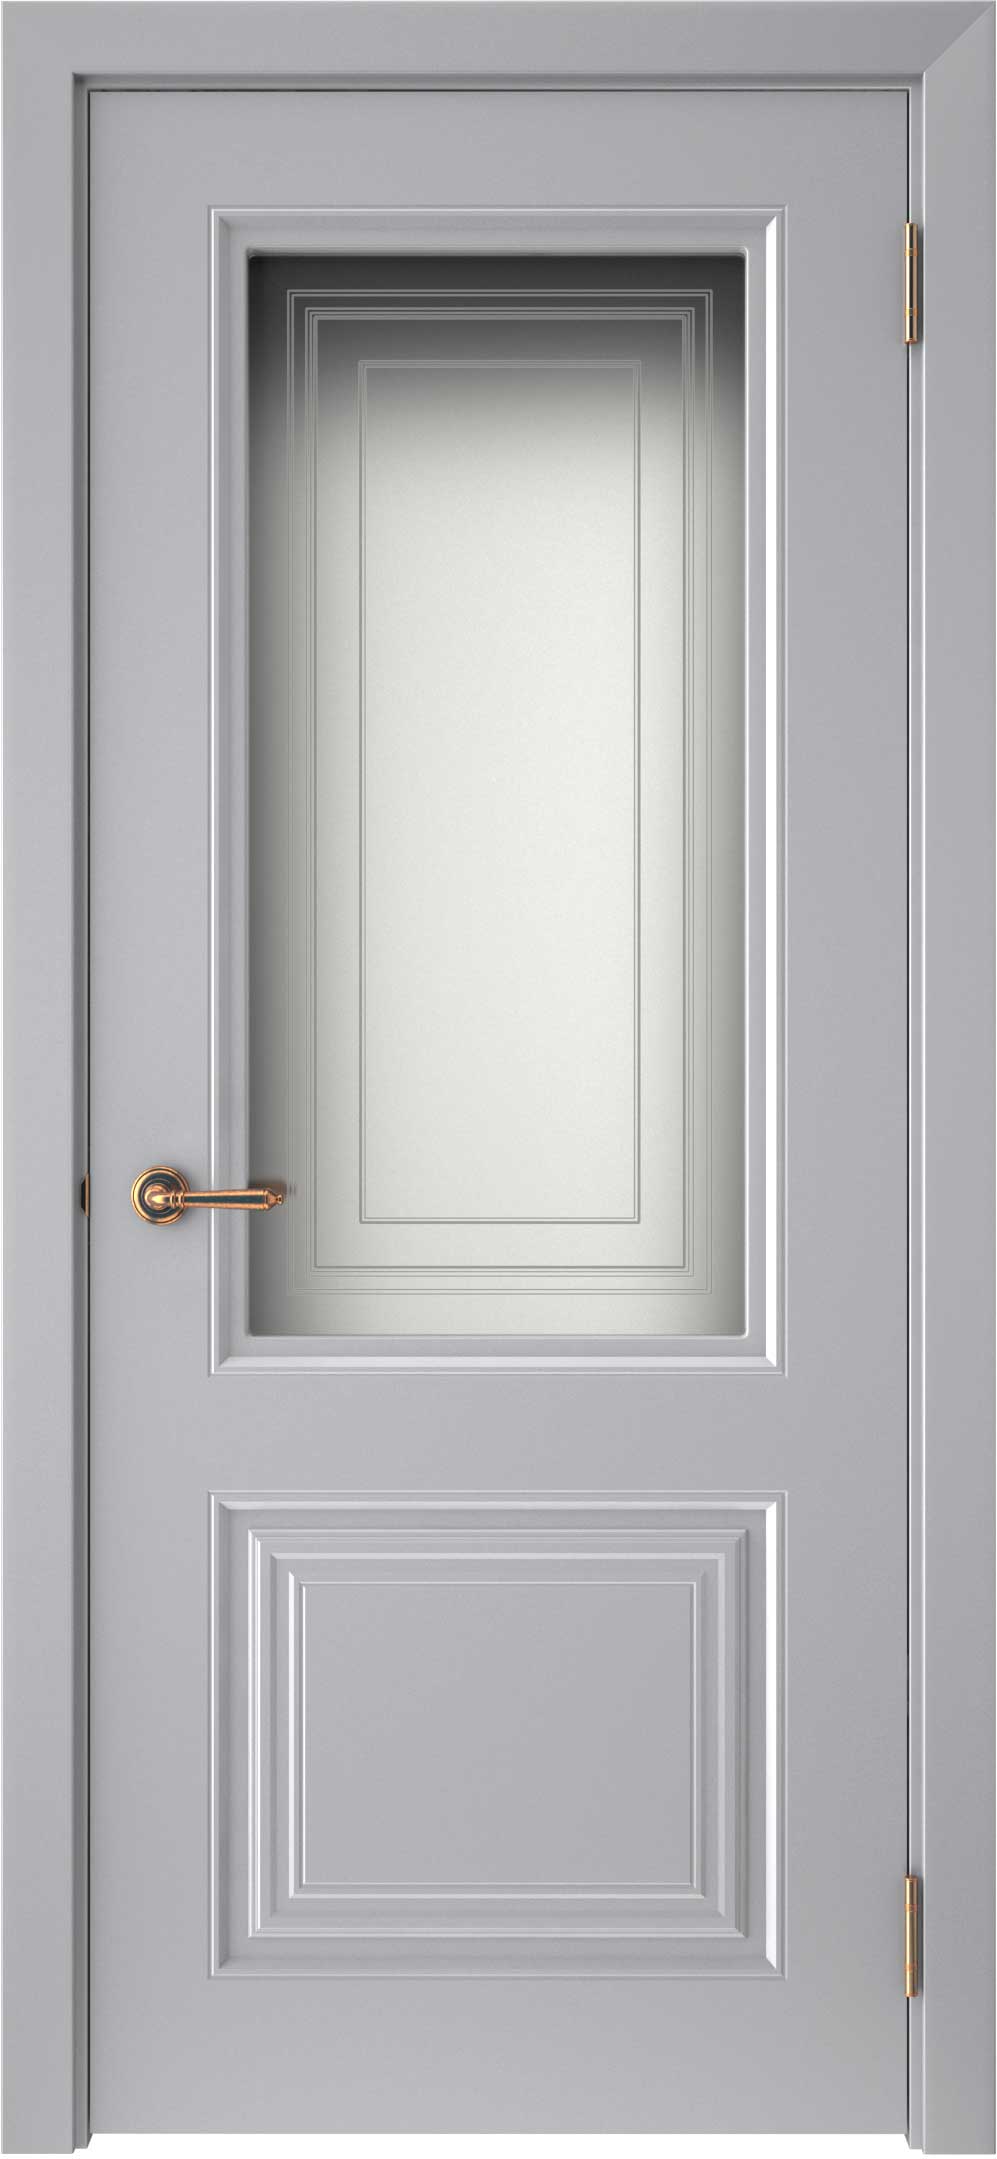 Двери крашеные (Эмаль) ТЕКОНА Смальта-42 со стеклом Серый ral 7036 размер 200 х 90 см. артикул F0000093296